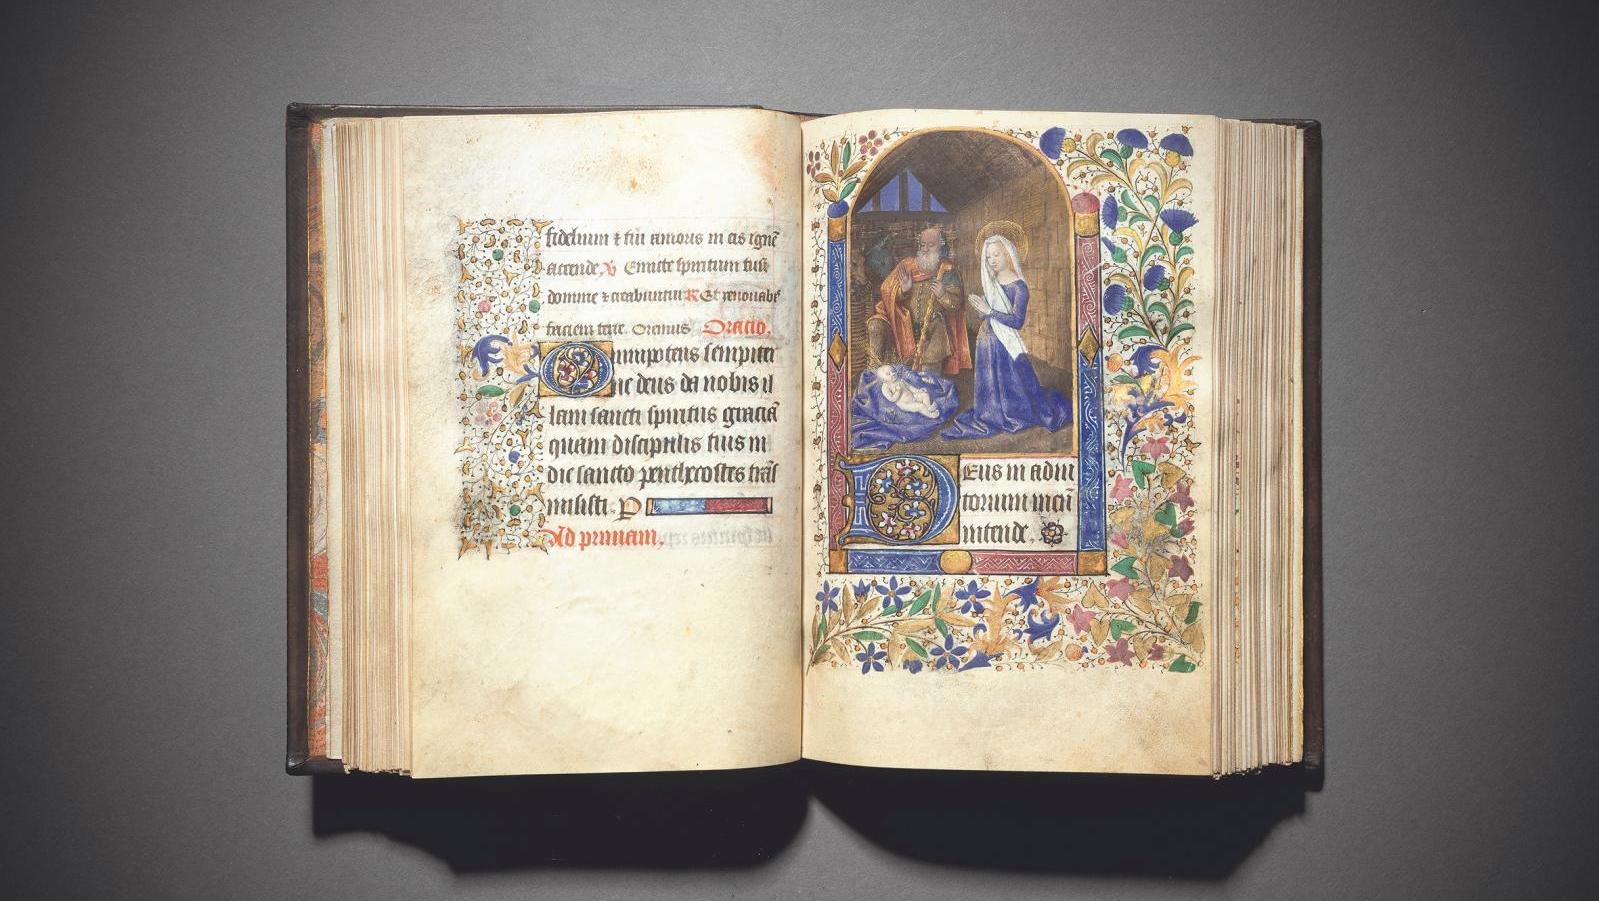 Angers ou Tours, vers 1460. Livre d’heures à l’usage de Tours, manuscrit en latin... Les riches heures de la collection Bouruet-Aubertot